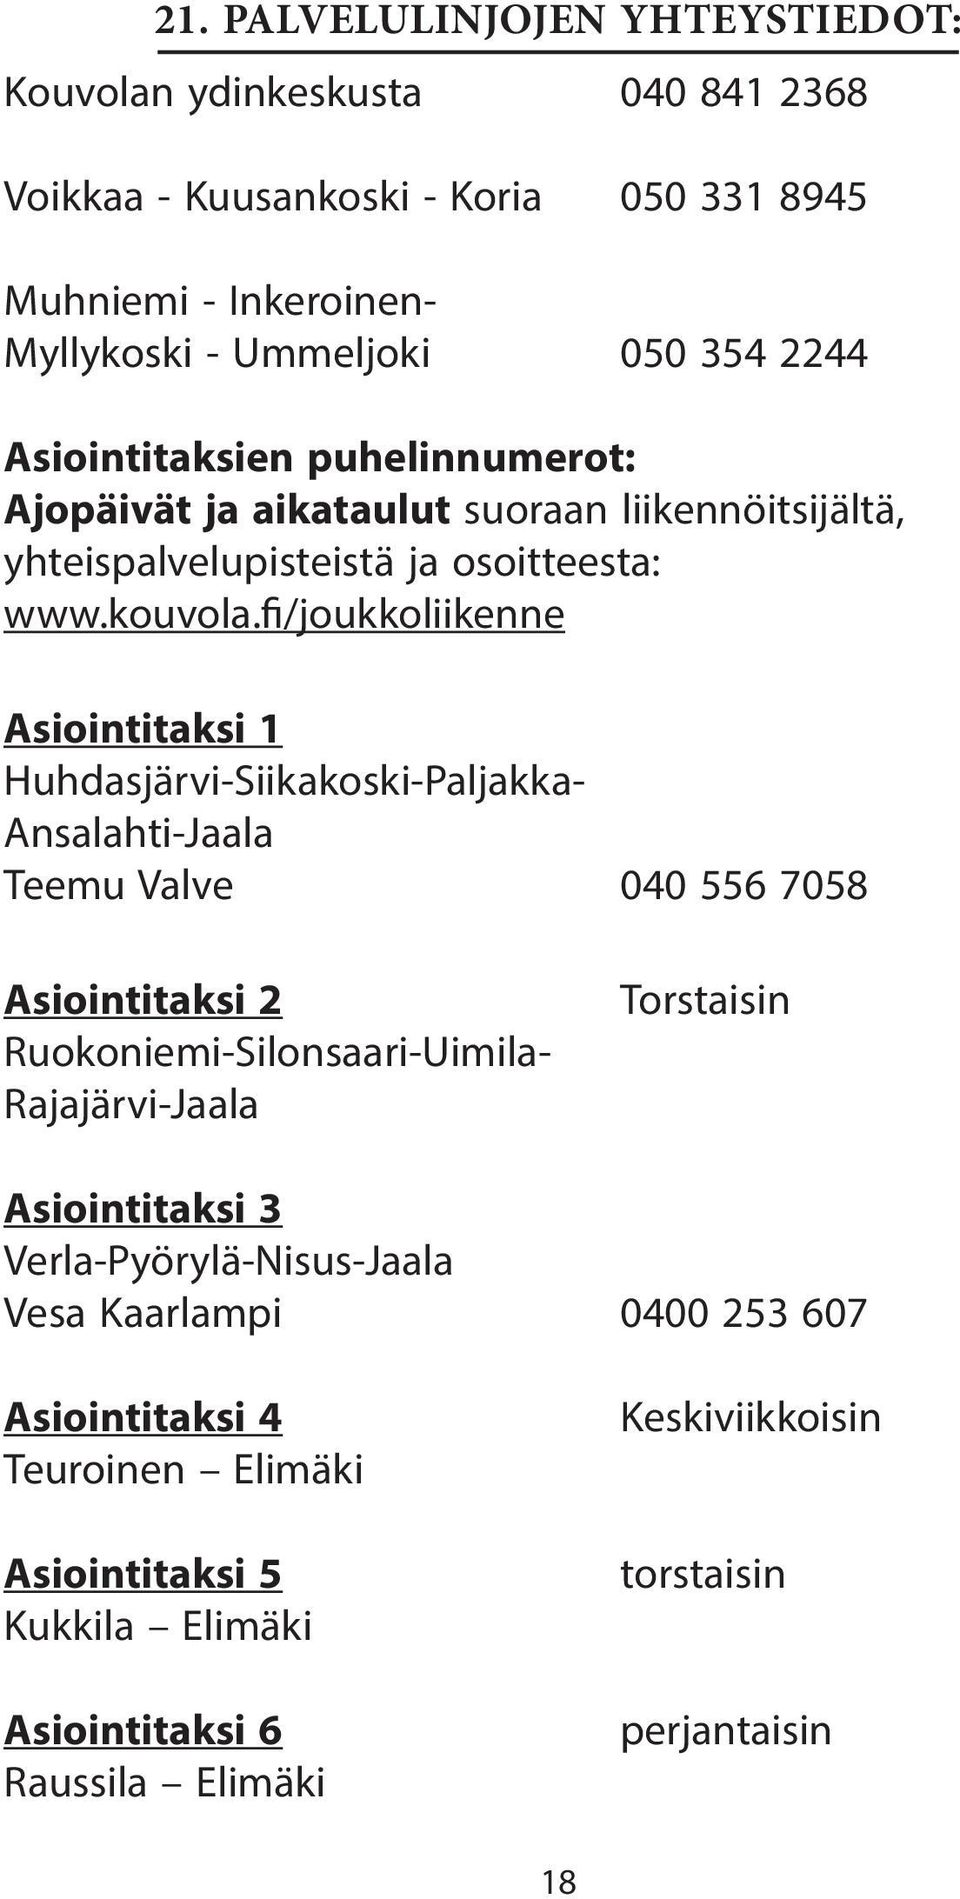 fi/joukkoliikenne Asiointitaksi 1 Huhdasjärvi-Siikakoski-Paljakka- Ansalahti-Jaala Teemu Valve 040 556 7058 Asiointitaksi 2 Ruokoniemi-Silonsaari-Uimila- Rajajärvi-Jaala